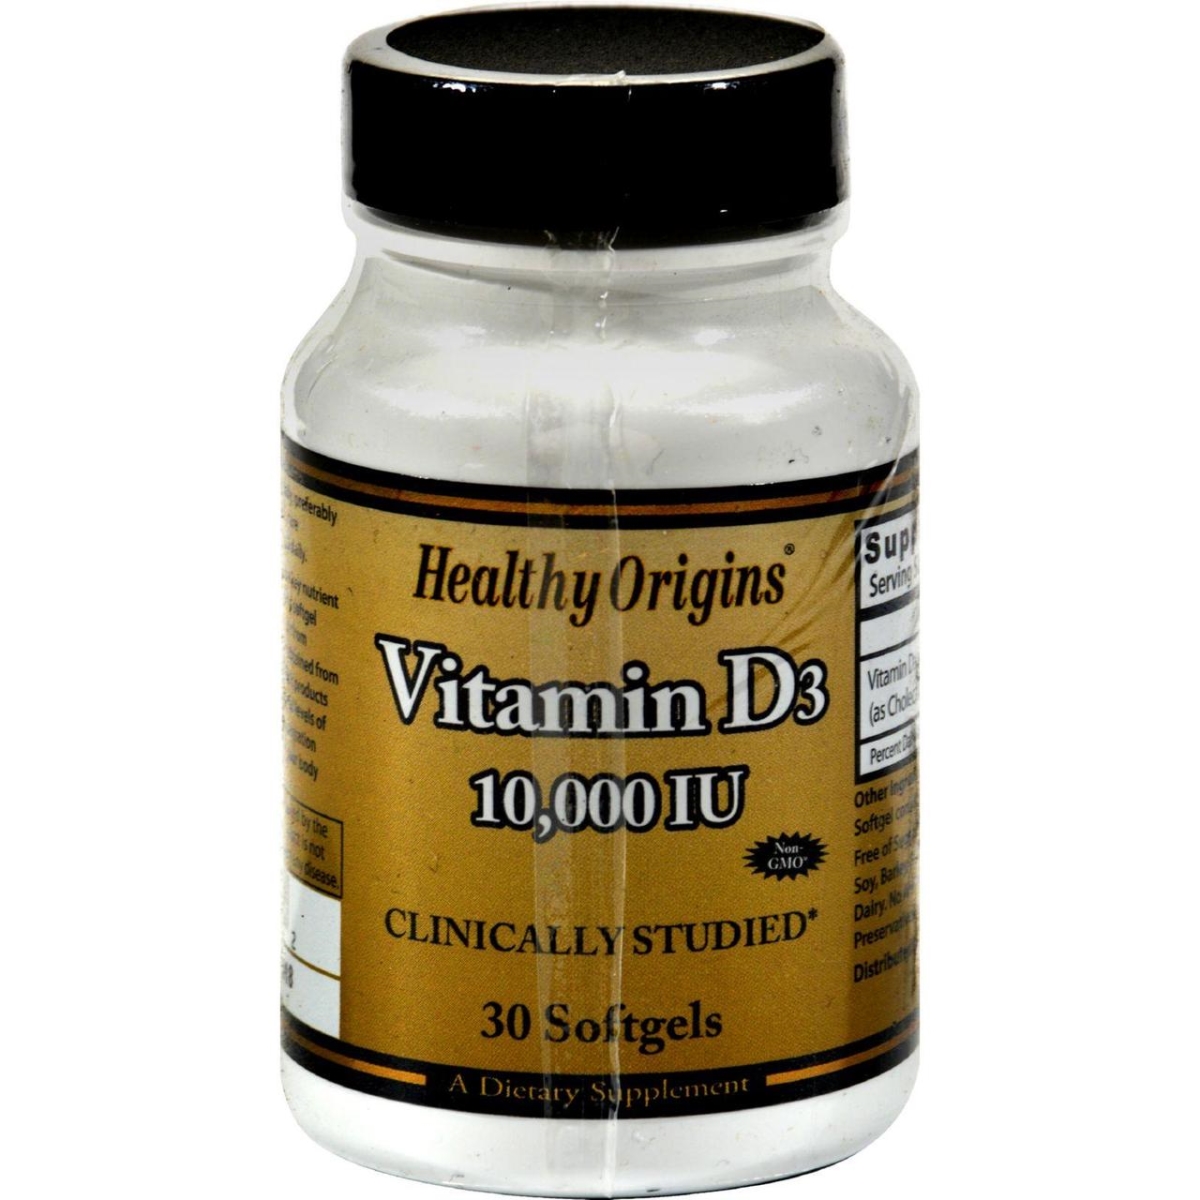 Hg0242180 Vitamin D3 - 10000 Iu, 30 Softgels